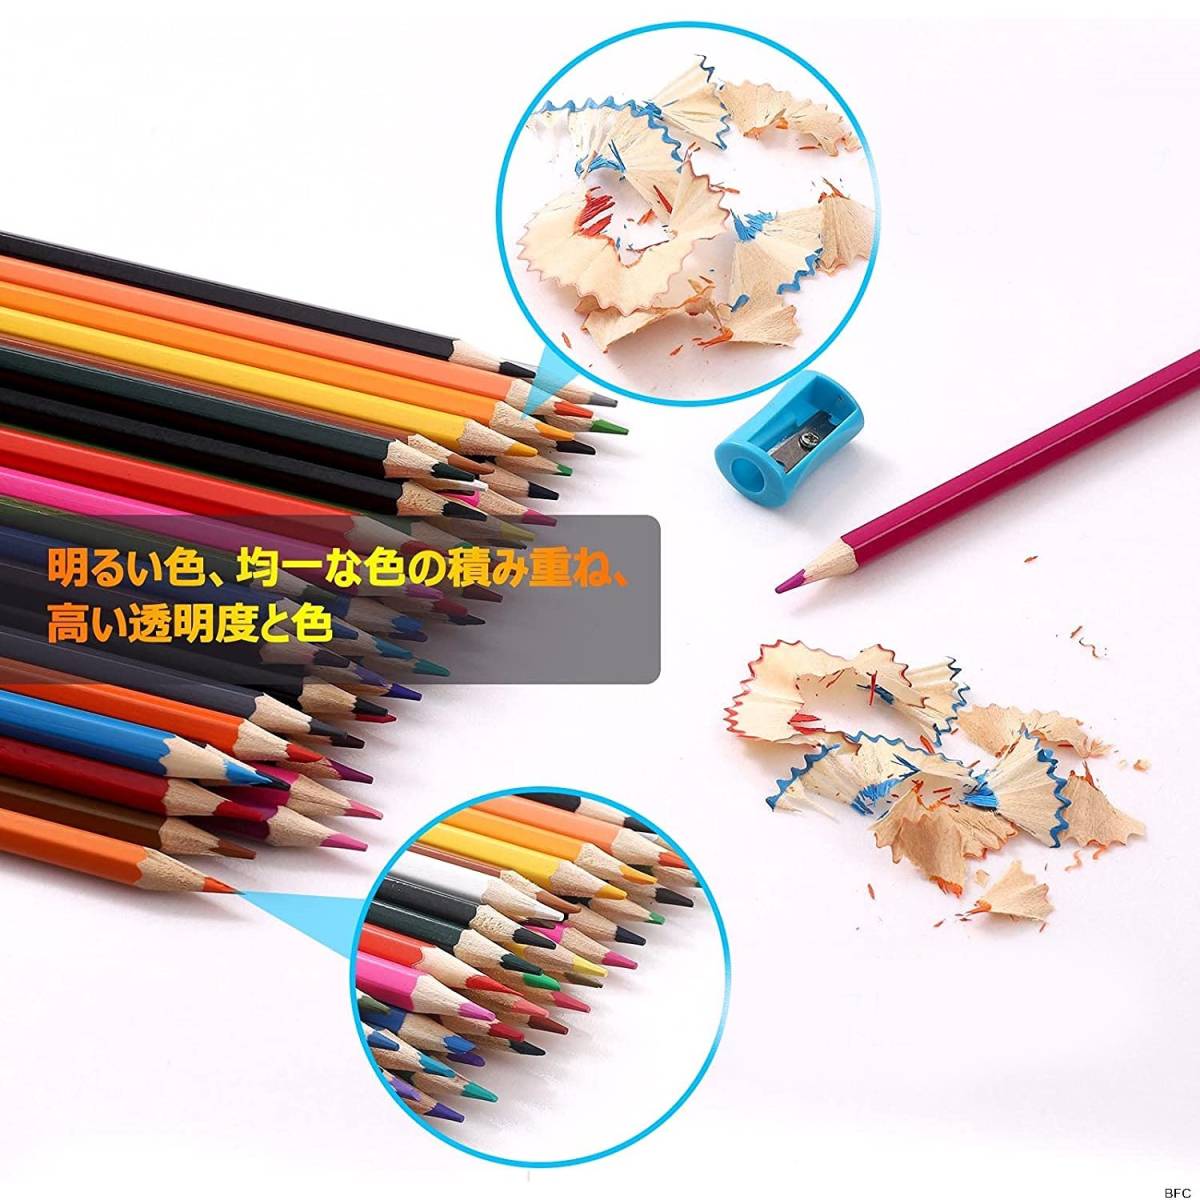 色鉛筆 72色 油性 色えんぴつ スケッチ アート 塗り絵 木製 カラフル鉛筆 通販